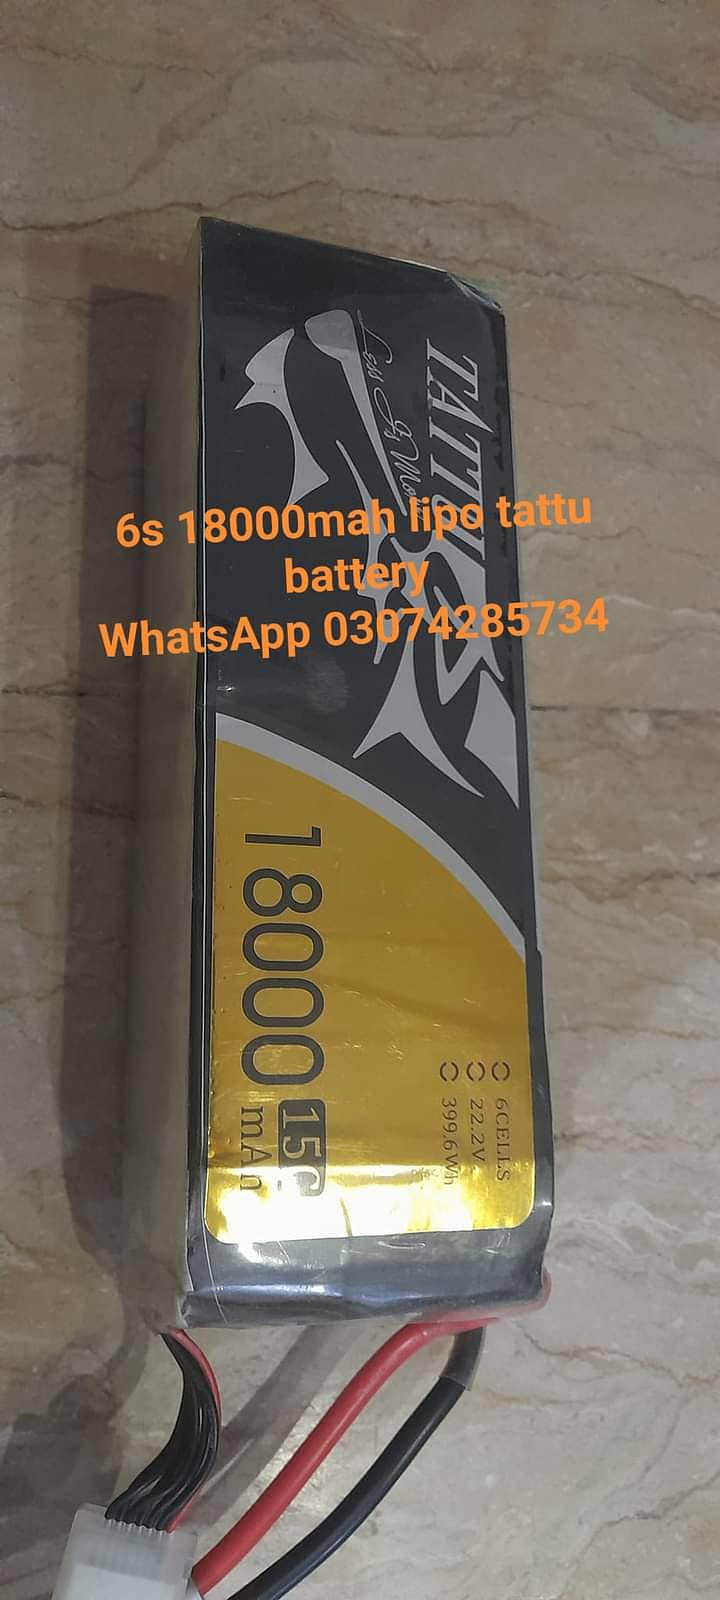 18000mah 6s tattu battery 1